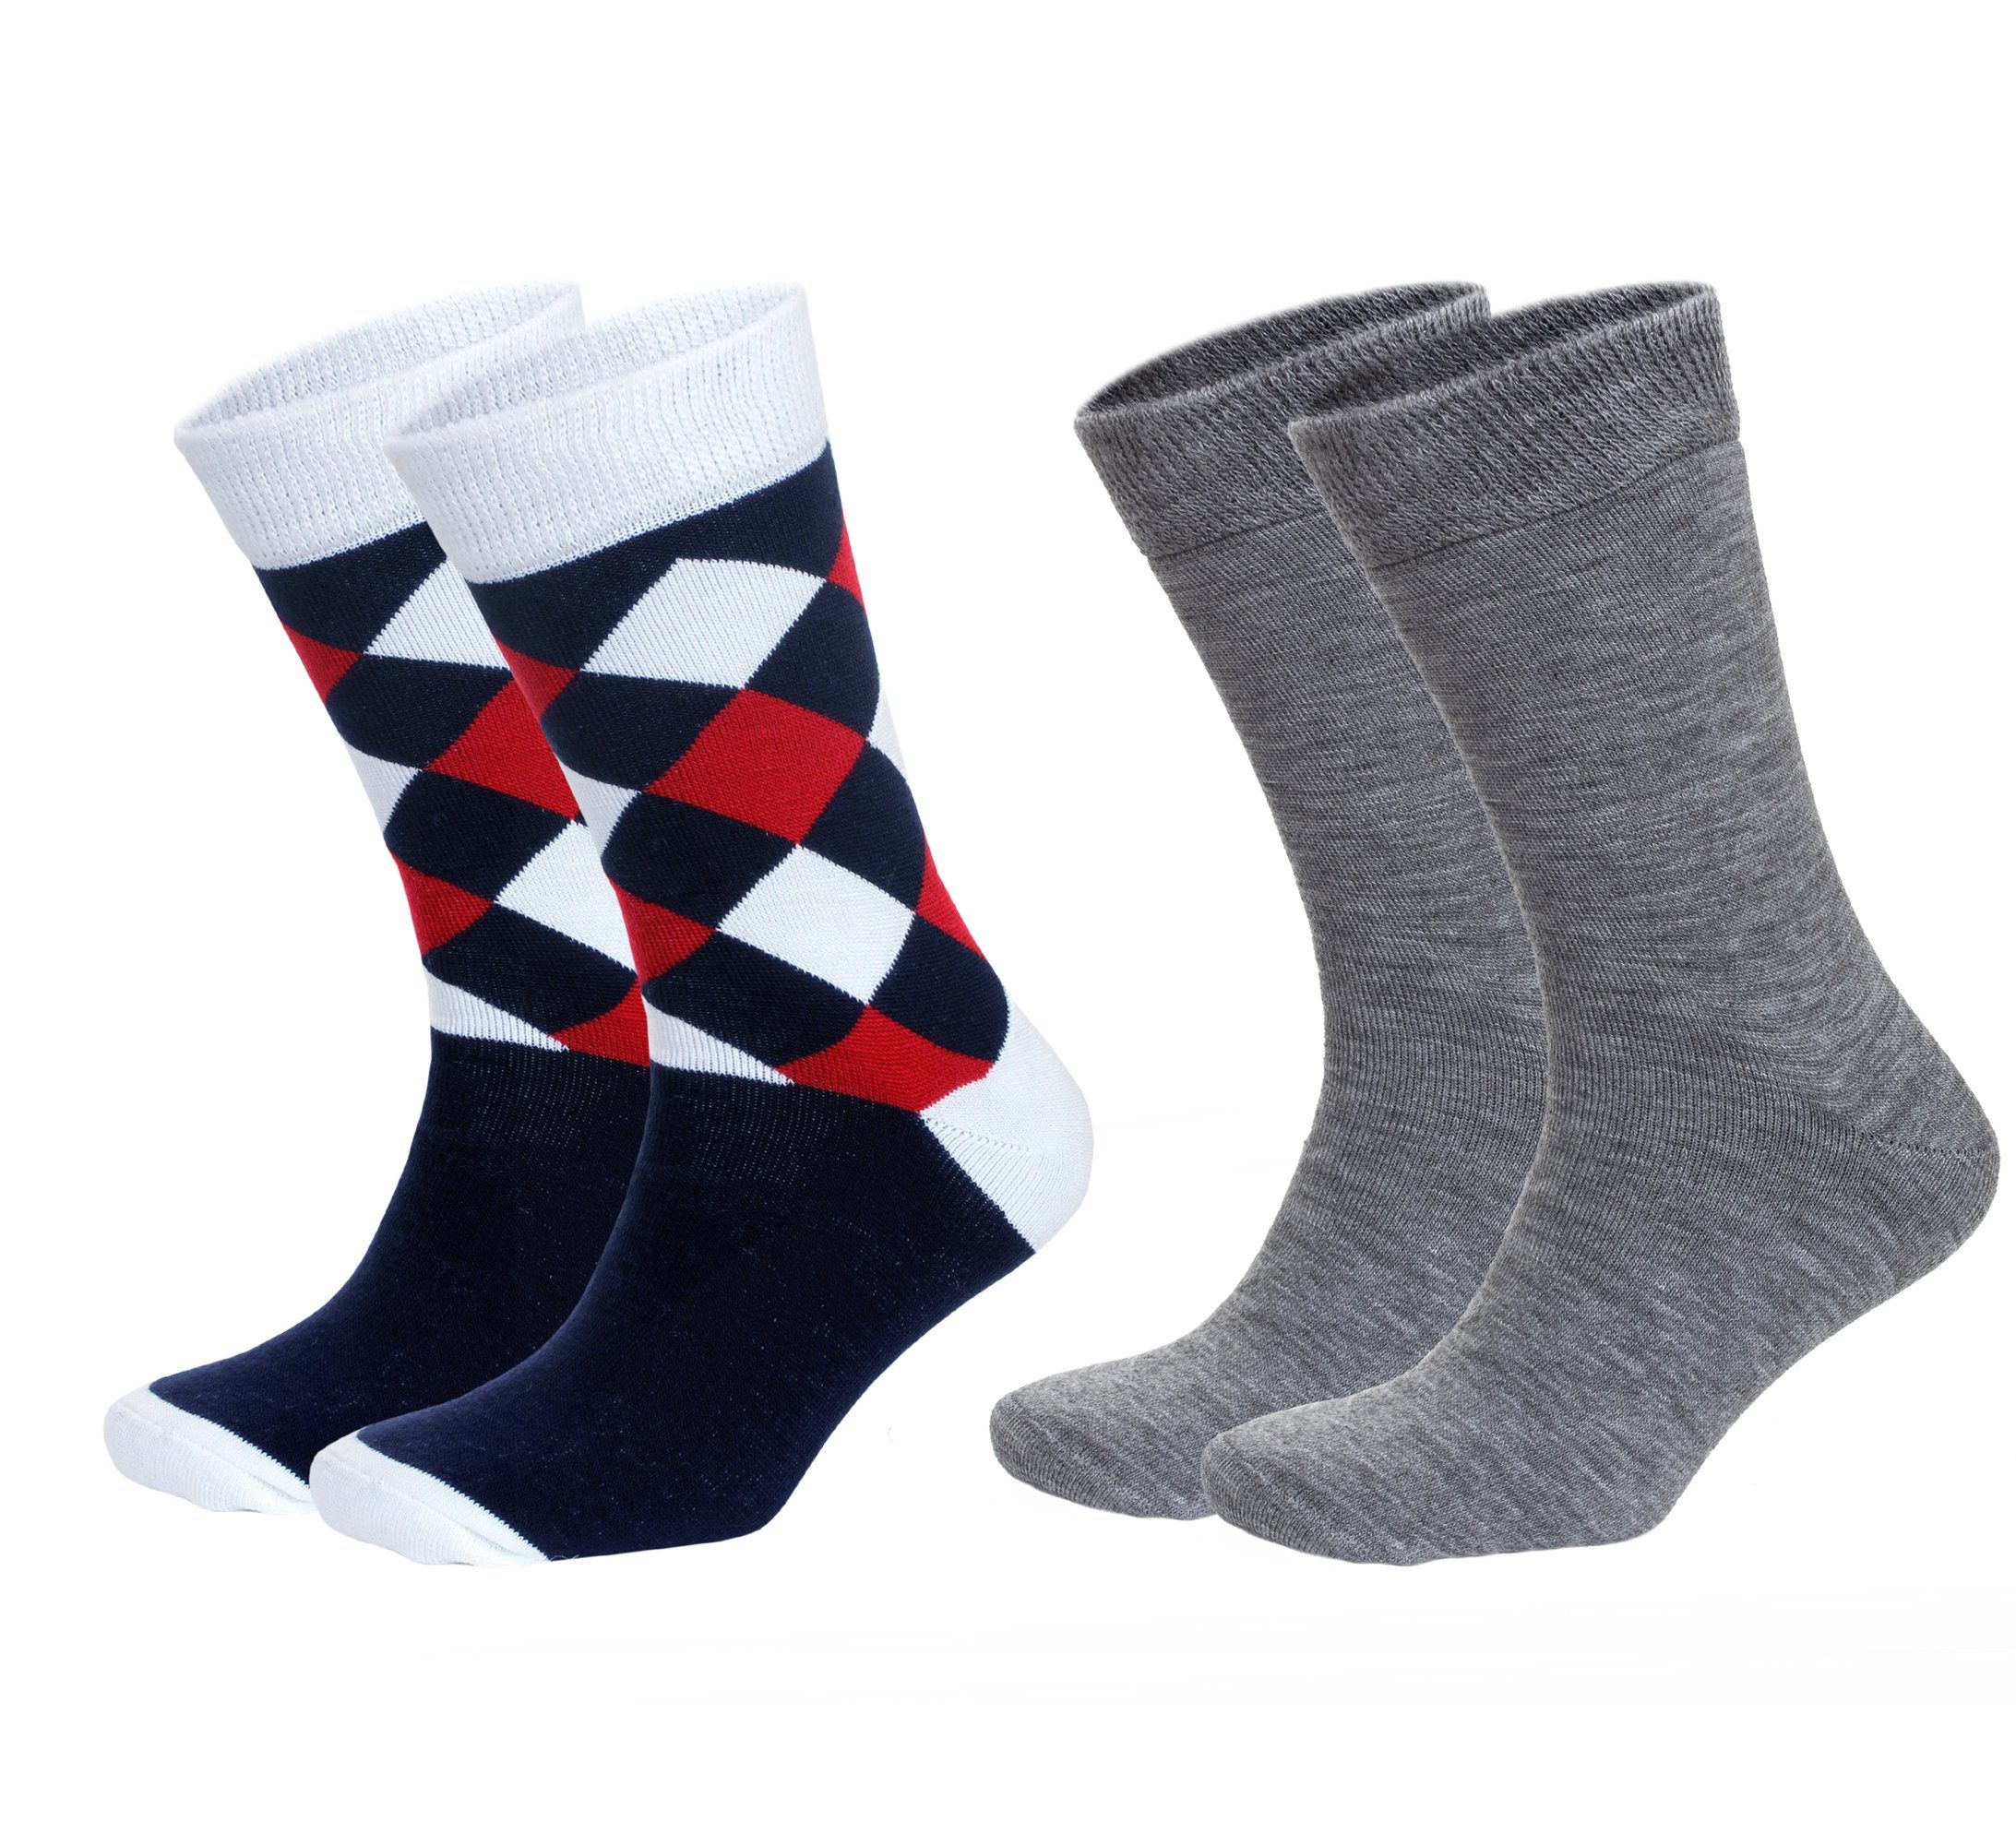 NoblesBox Socken, Herren Warme 41-45 (Beutel, Arbeitssocken EU Asorti-5 2-Paar, Herren Thermosocken Wintersocken Größe) Herren